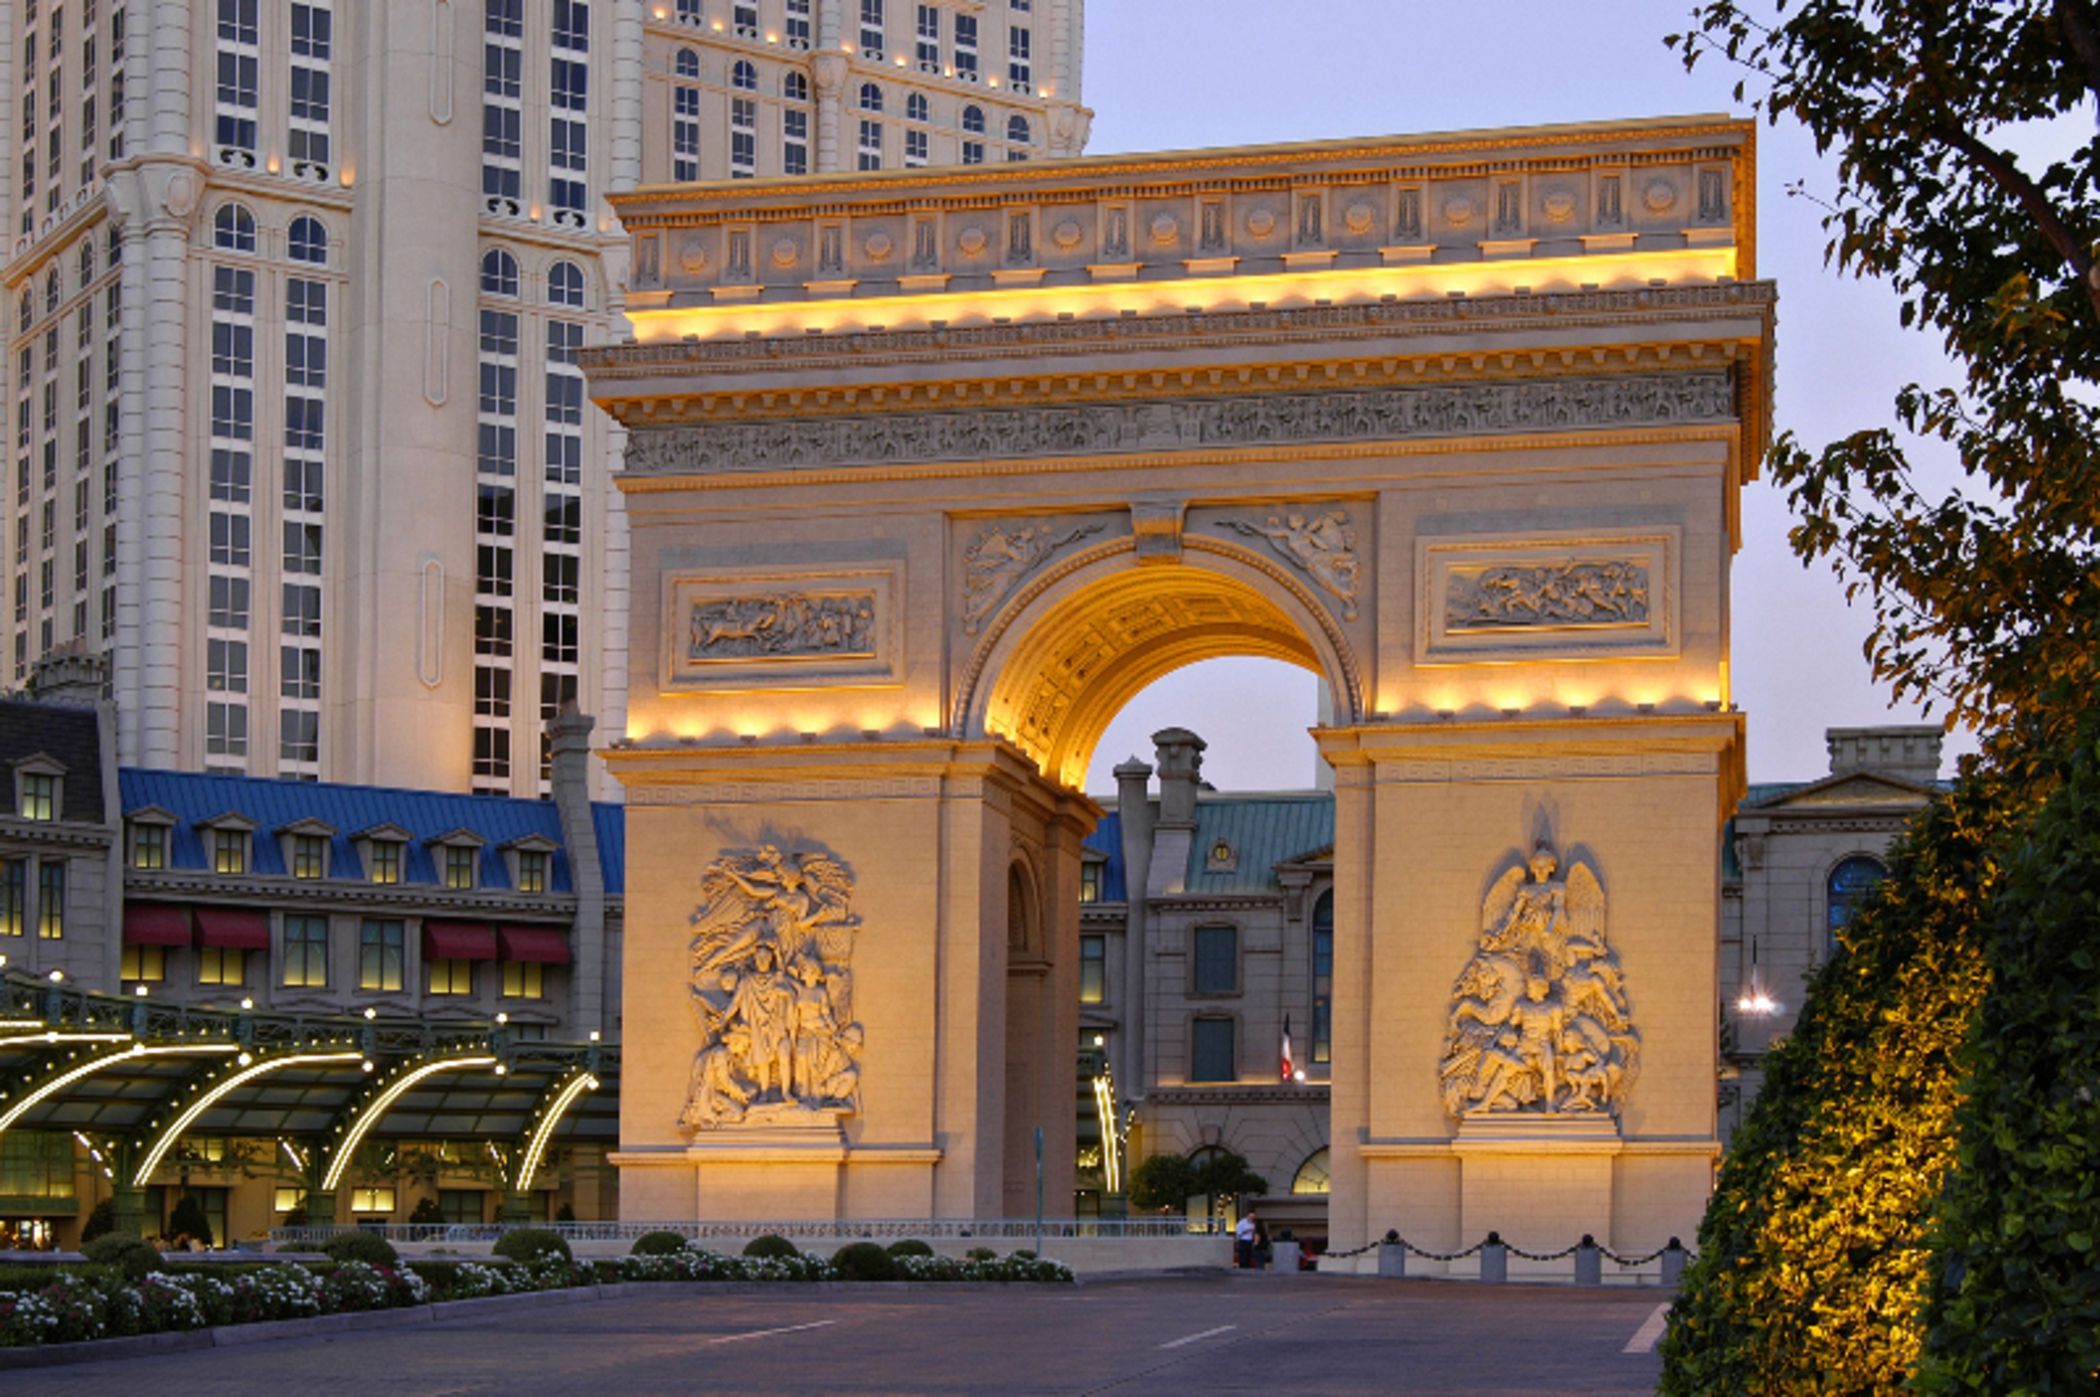 4⋆ PARIS LAS VEGAS HOTEL & CASINO ≡ Las Vegas, NV, United States ≡ Lowest  Booking Rates For Paris Las Vegas Hotel & Casino in Las Vegas